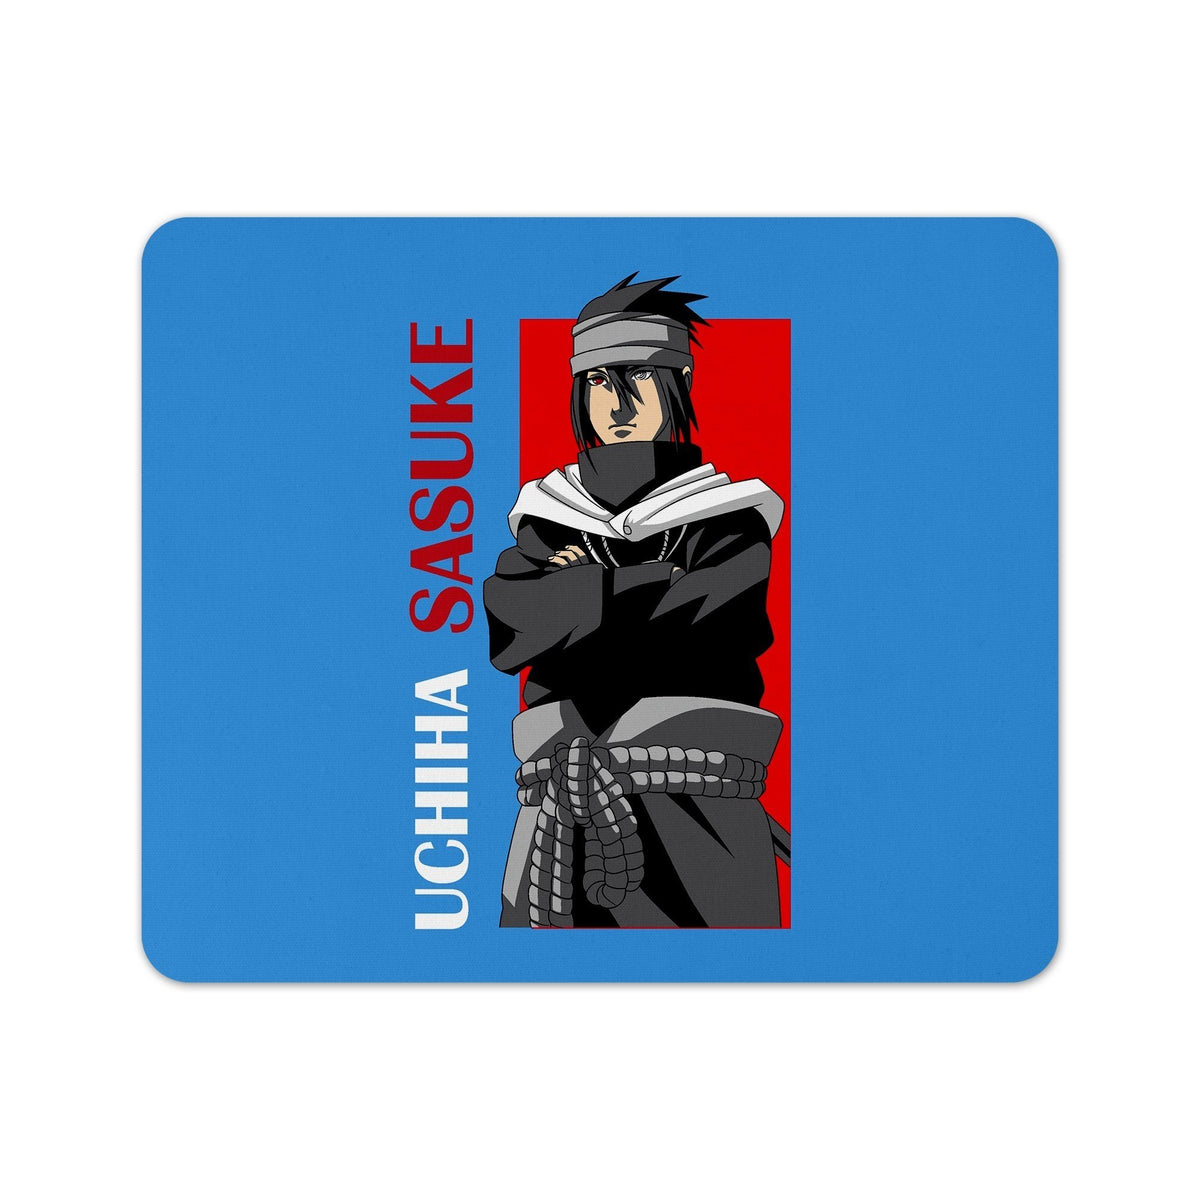 sasuke icons  Sasuke uchiha, Sasuke uchiha shippuden, Sasuke